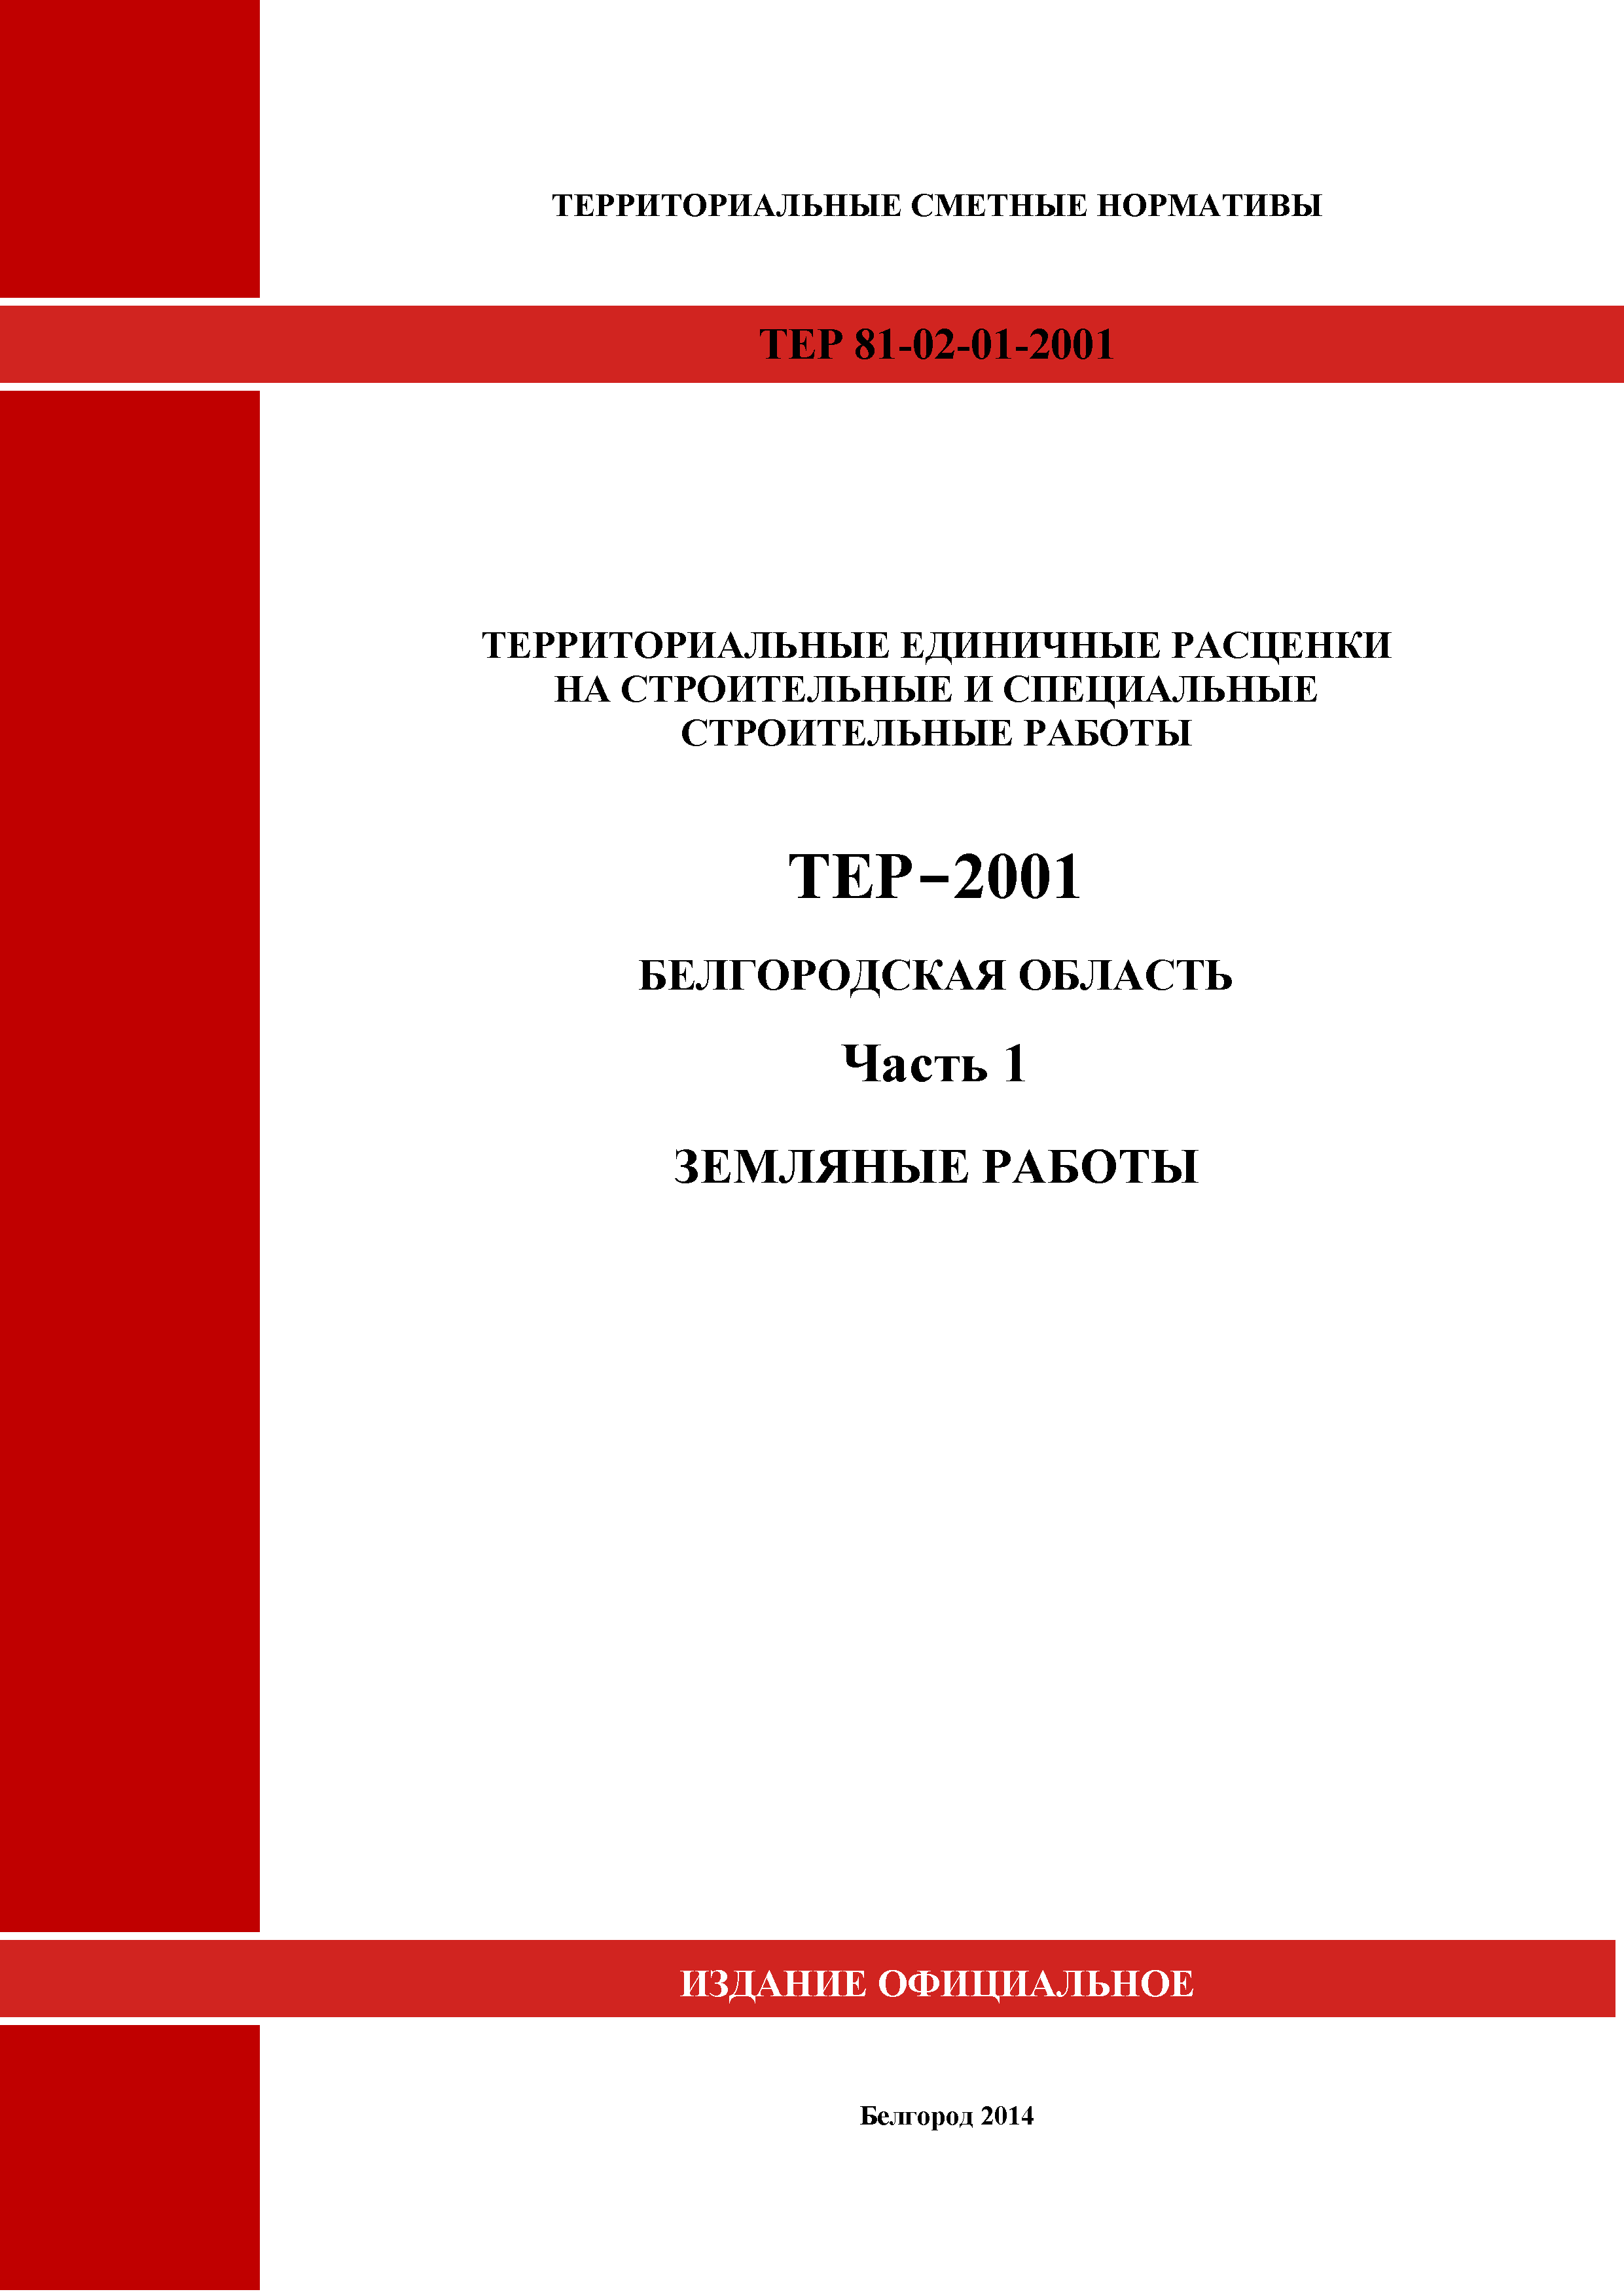 ТЕР Белгородская область 81-02-01-2001